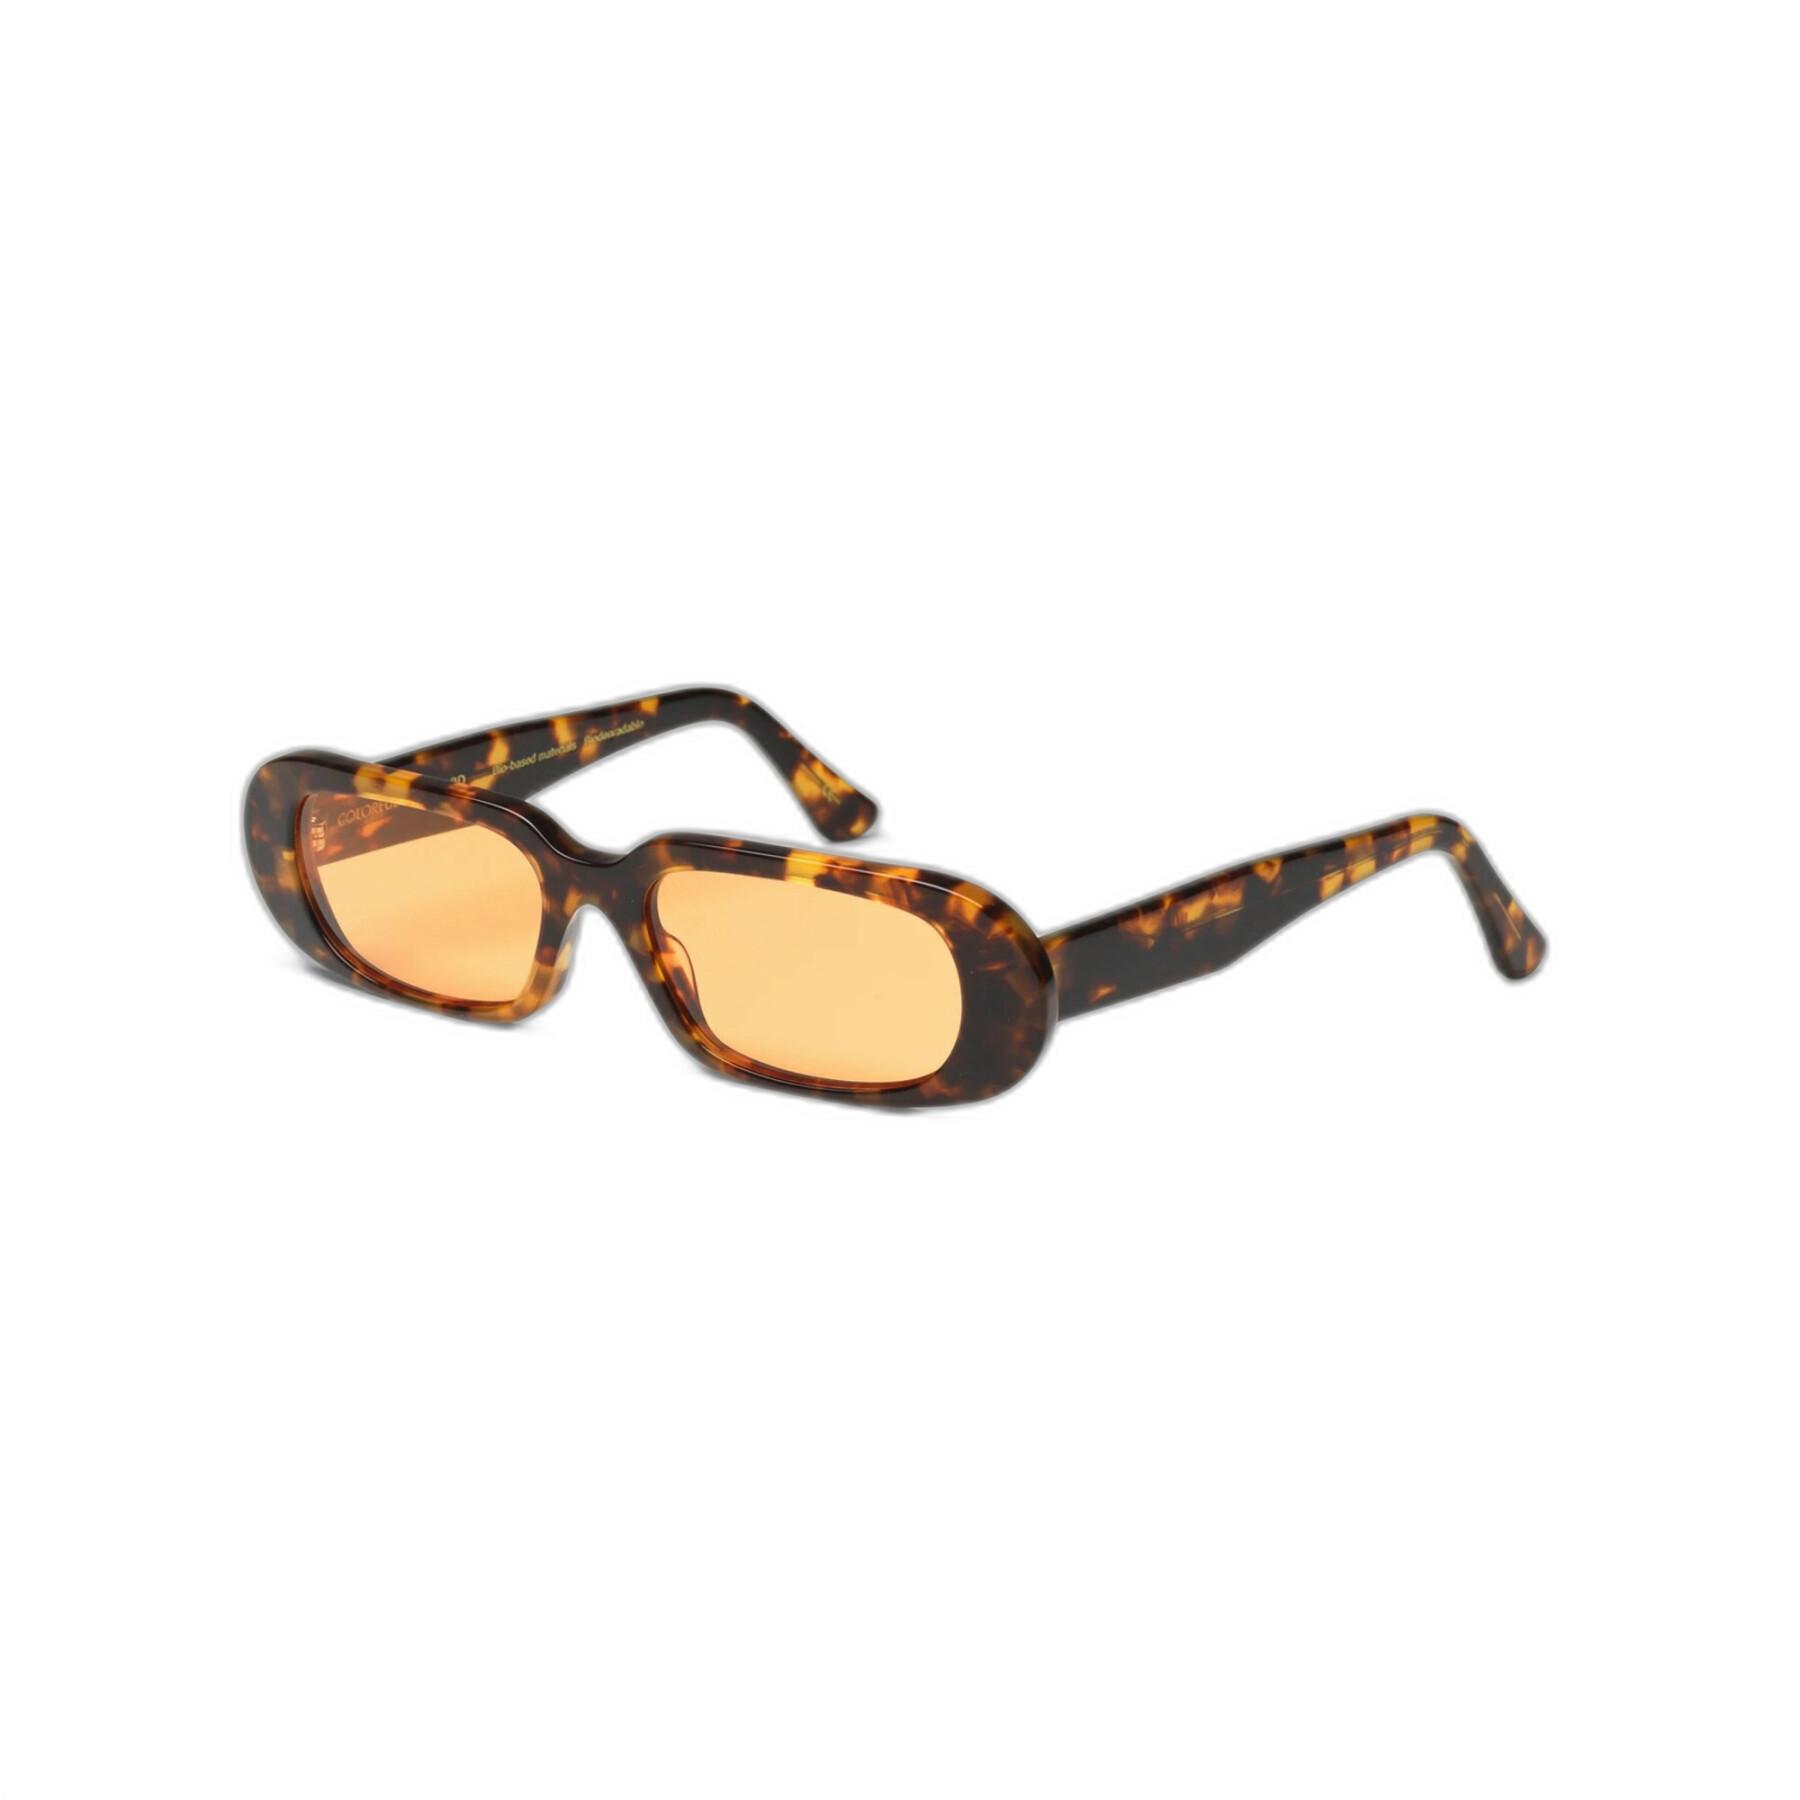 Okulary przeciwsłoneczne Colorful Standard 09 classic havana/orange